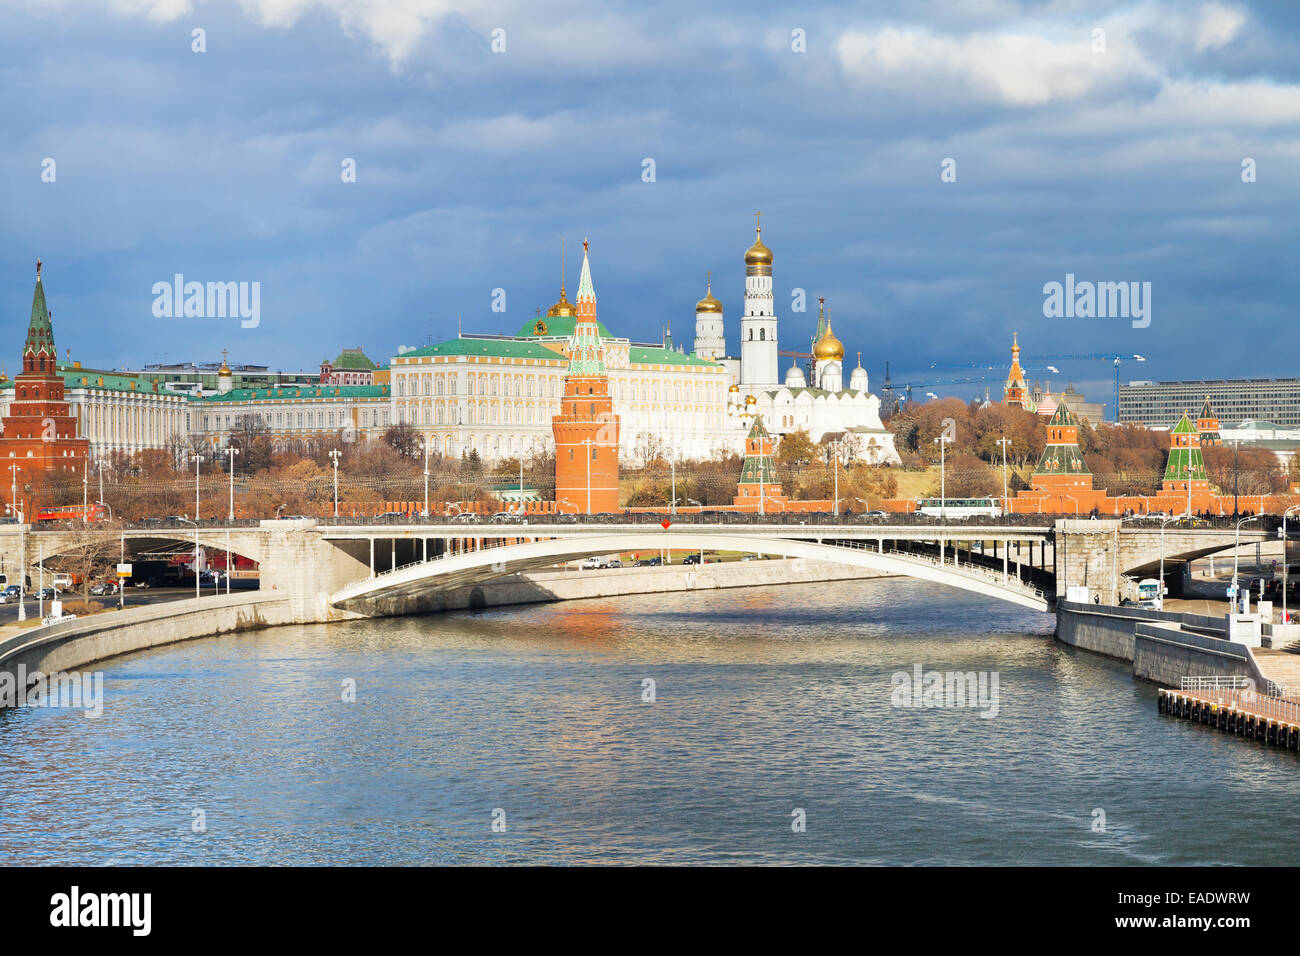 sunlight illuminated Bolshoy Kamenny bridge, Moskva River and Moscow Kremlin in autumn day Stock Photo